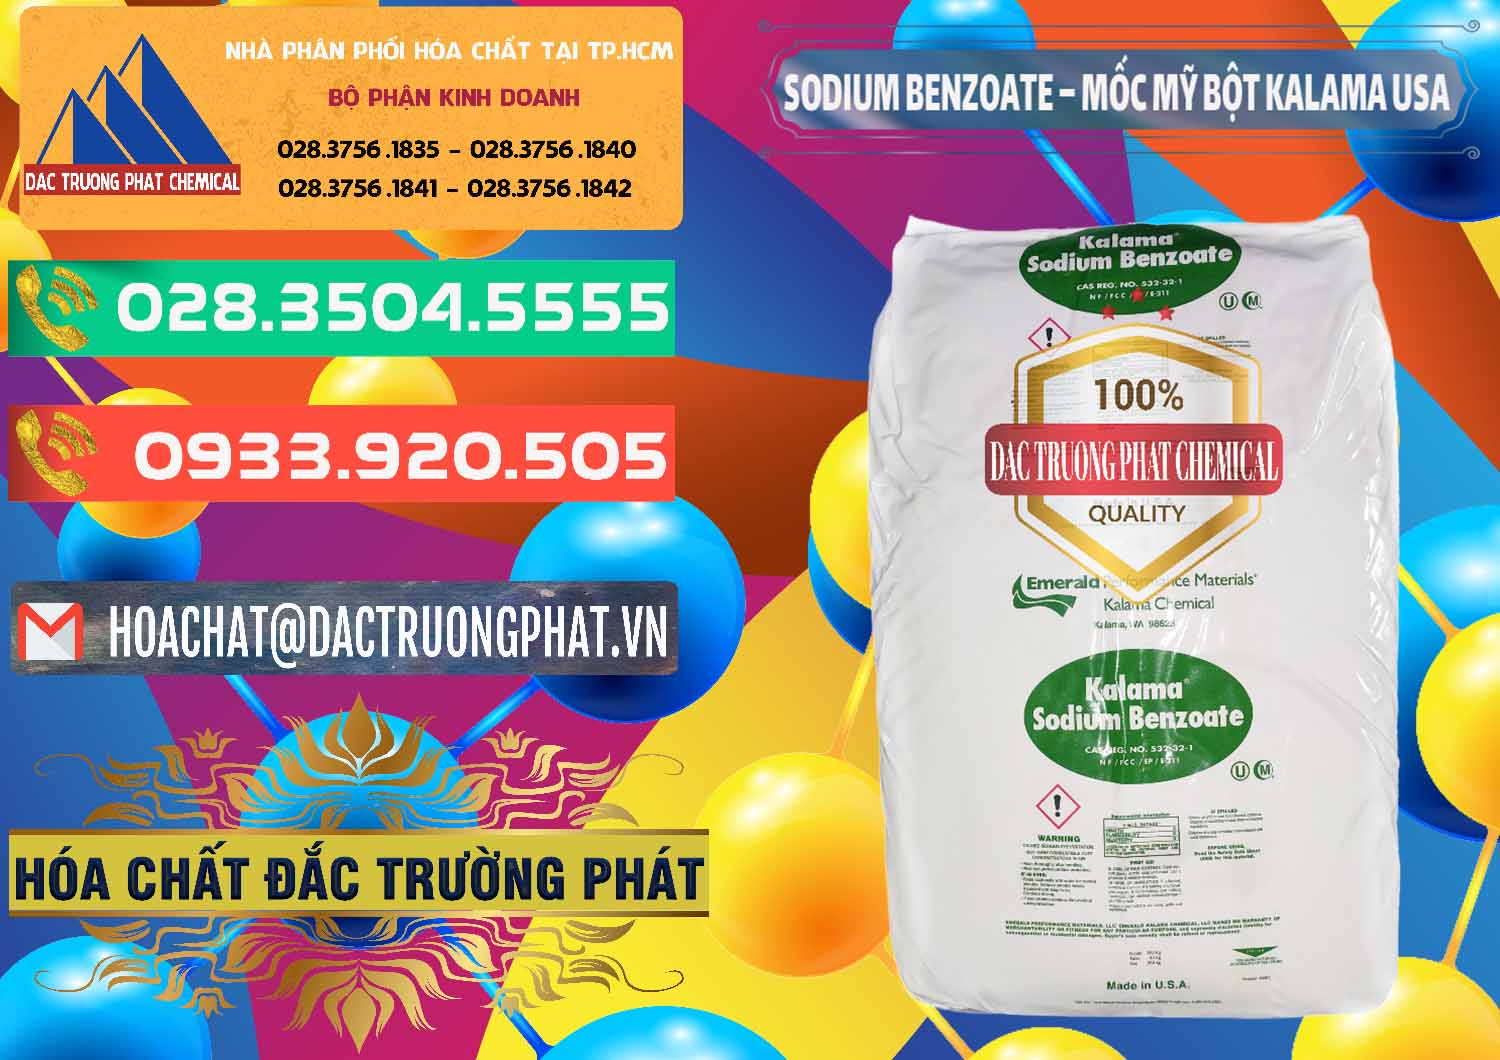 Công ty phân phối và bán Sodium Benzoate - Mốc Bột Kalama Food Grade Mỹ Usa - 0136 - Nhà cung cấp và bán hóa chất tại TP.HCM - congtyhoachat.com.vn